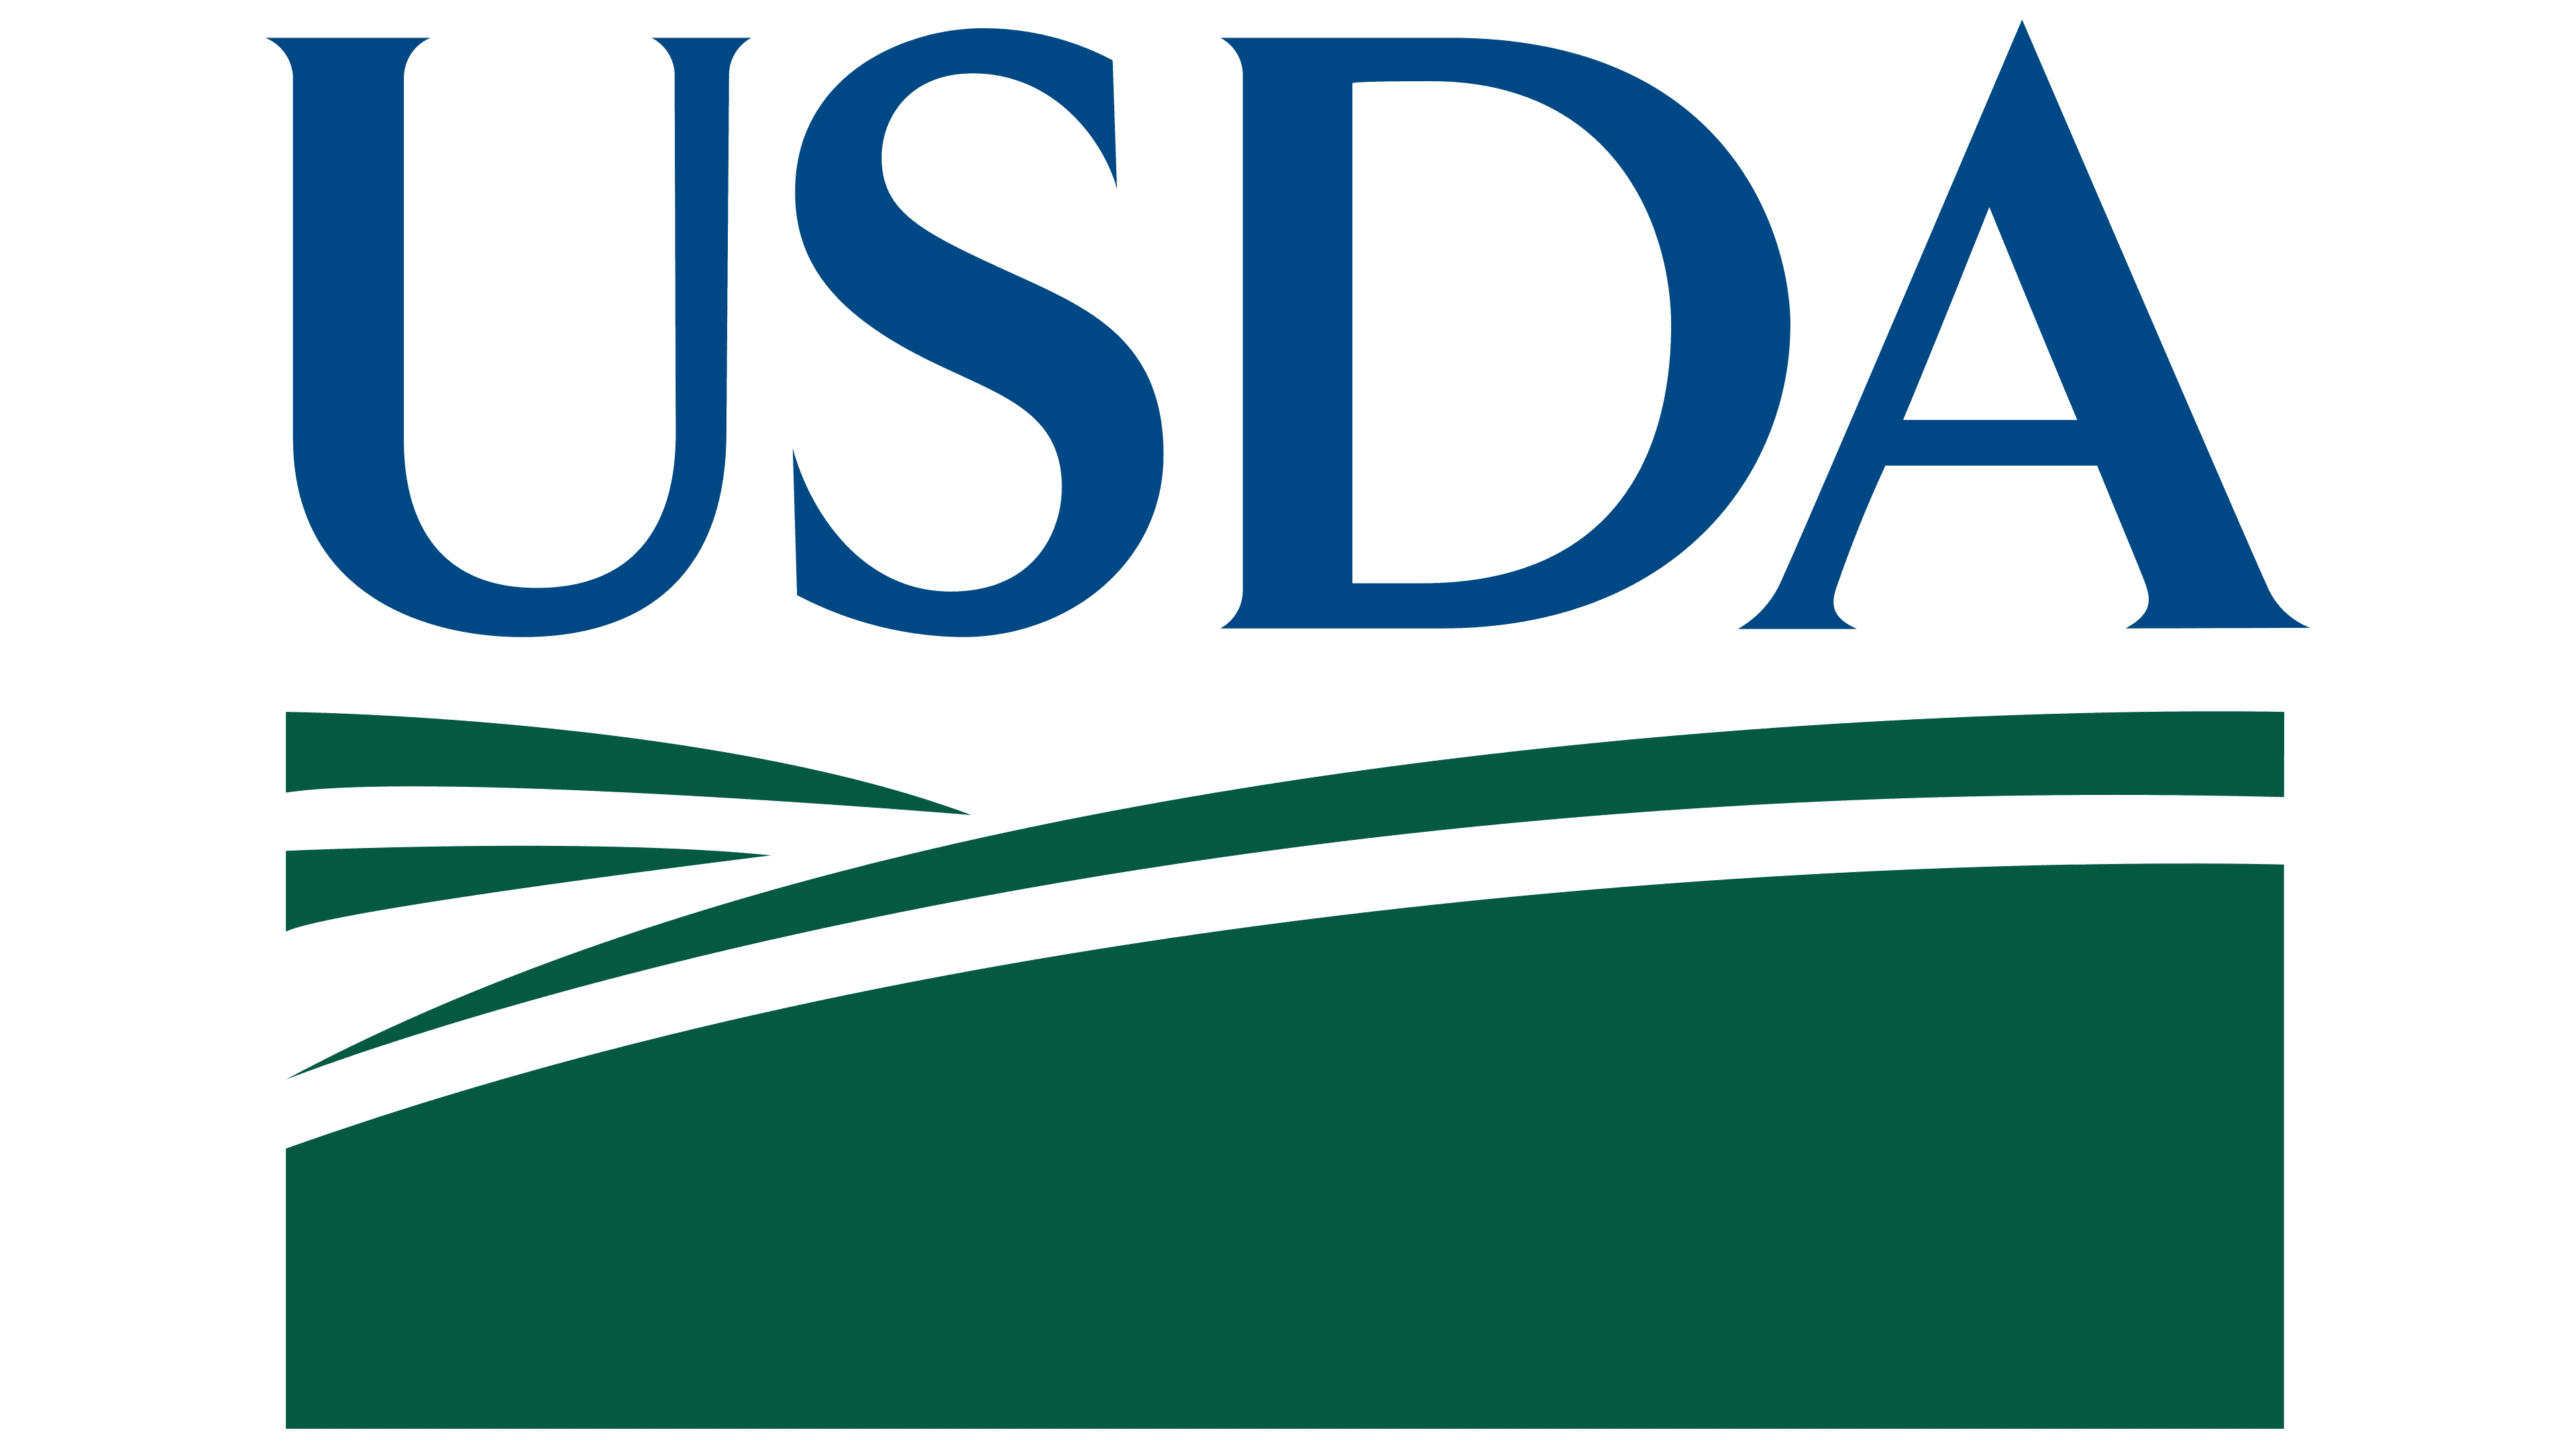 USDA Stratus CTA